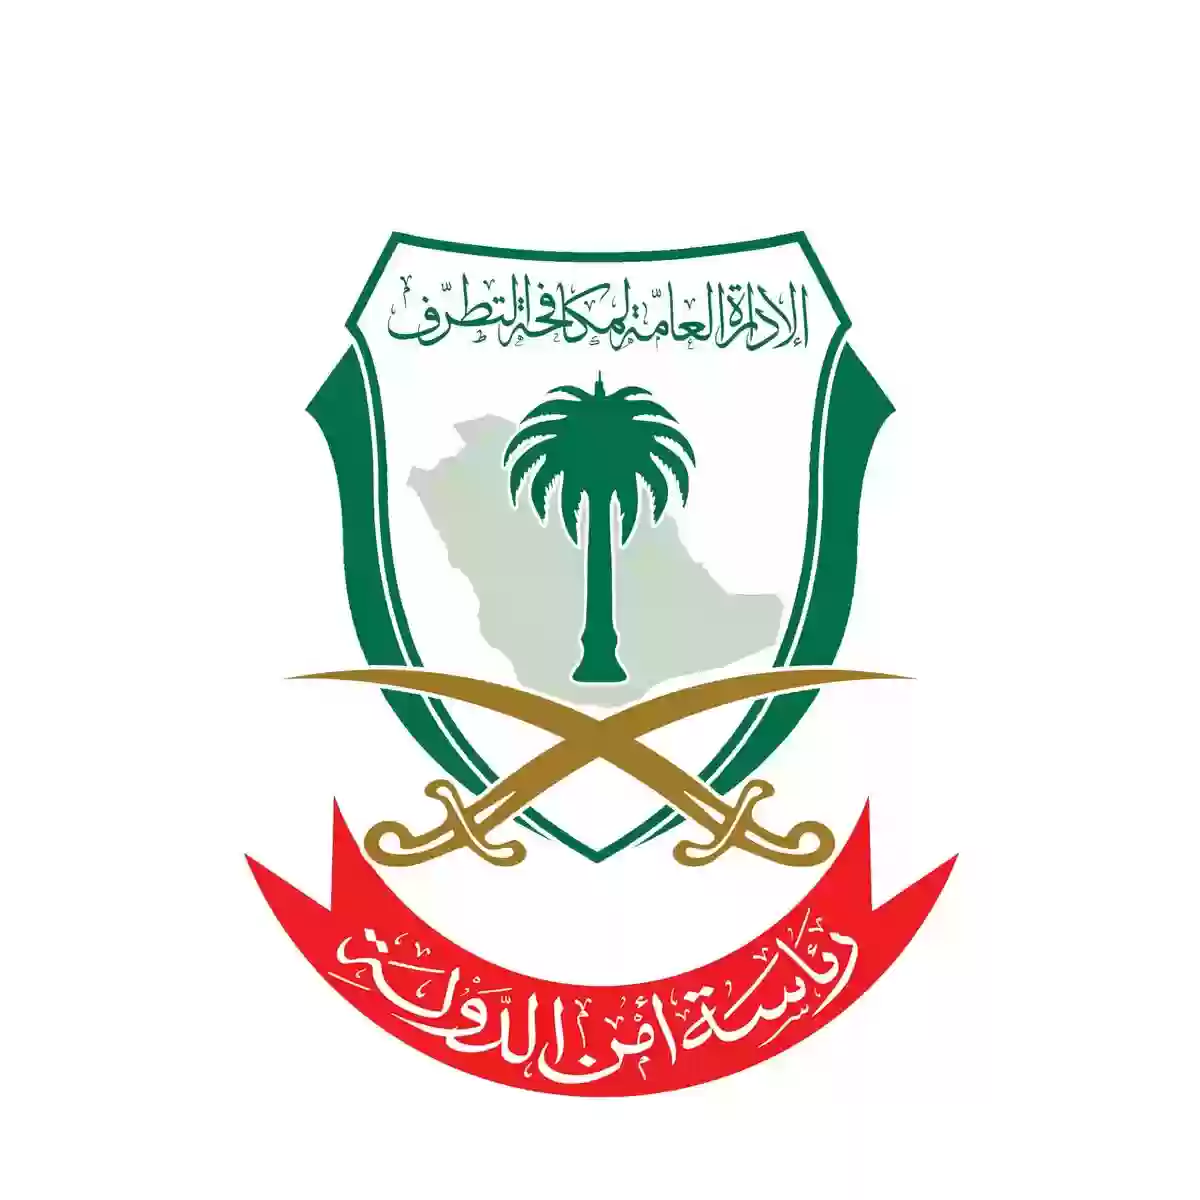 أمن الدولة بالسعودية يفتح باب التسجيل على رتبتي جندي وعريف